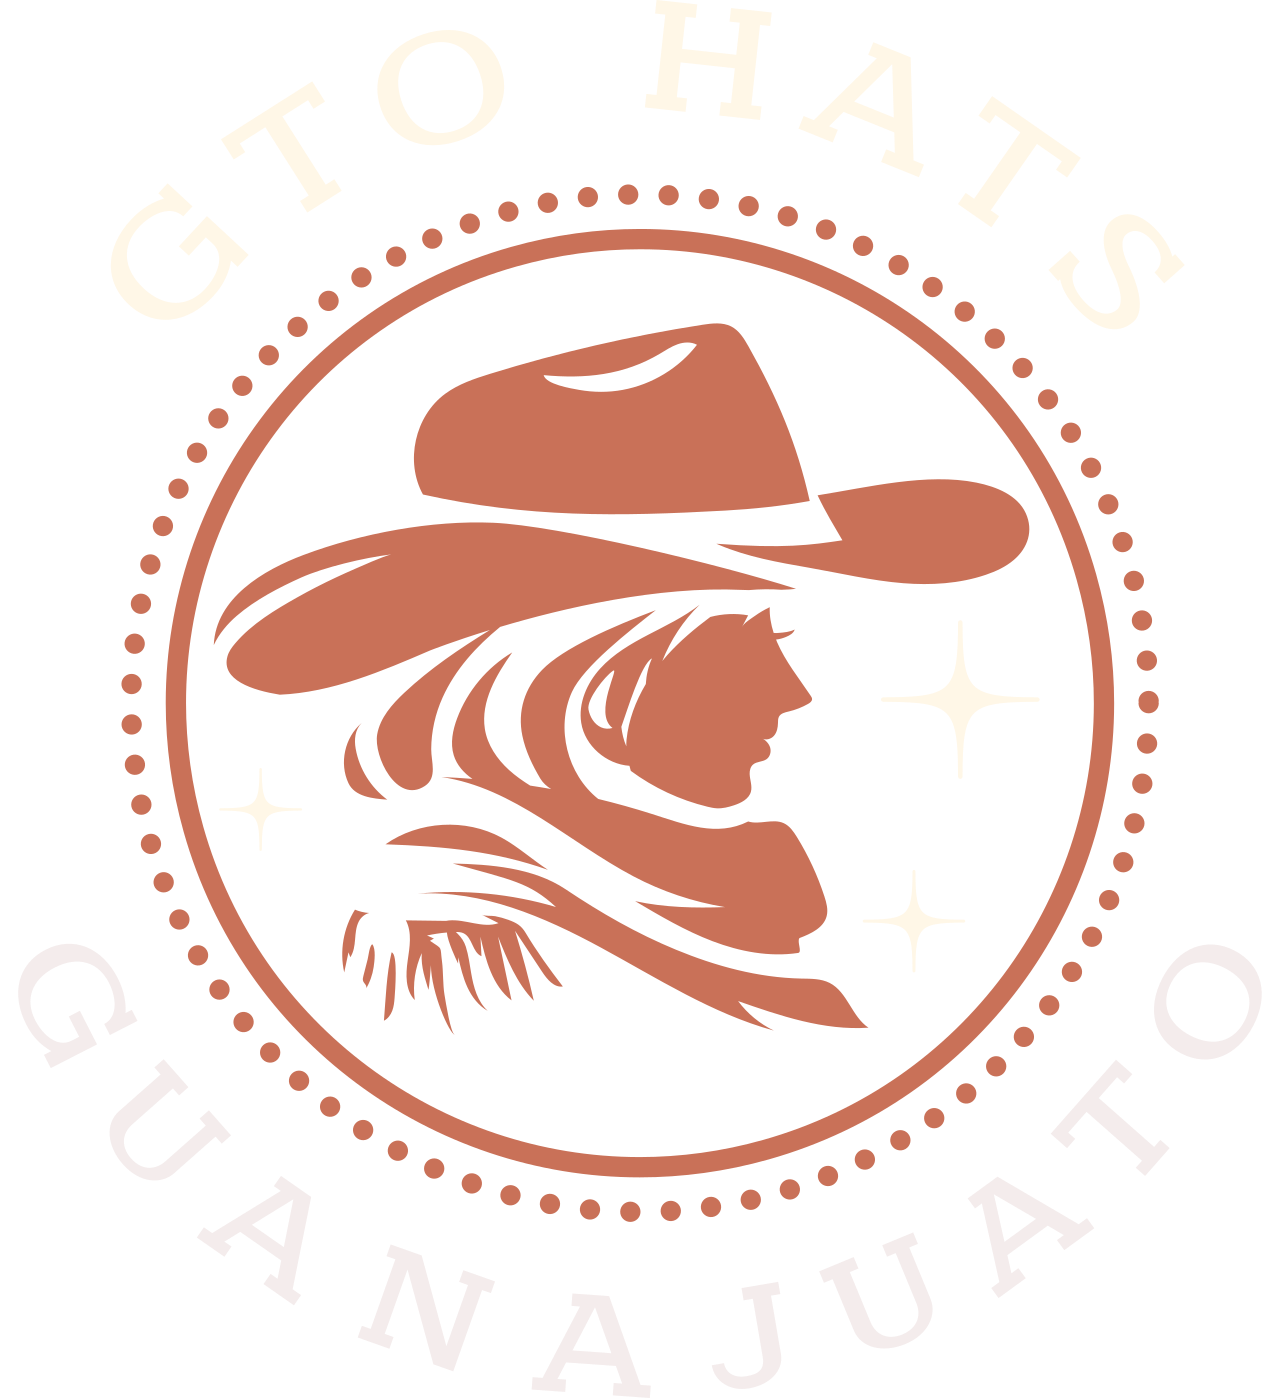 GTO HATS's logo